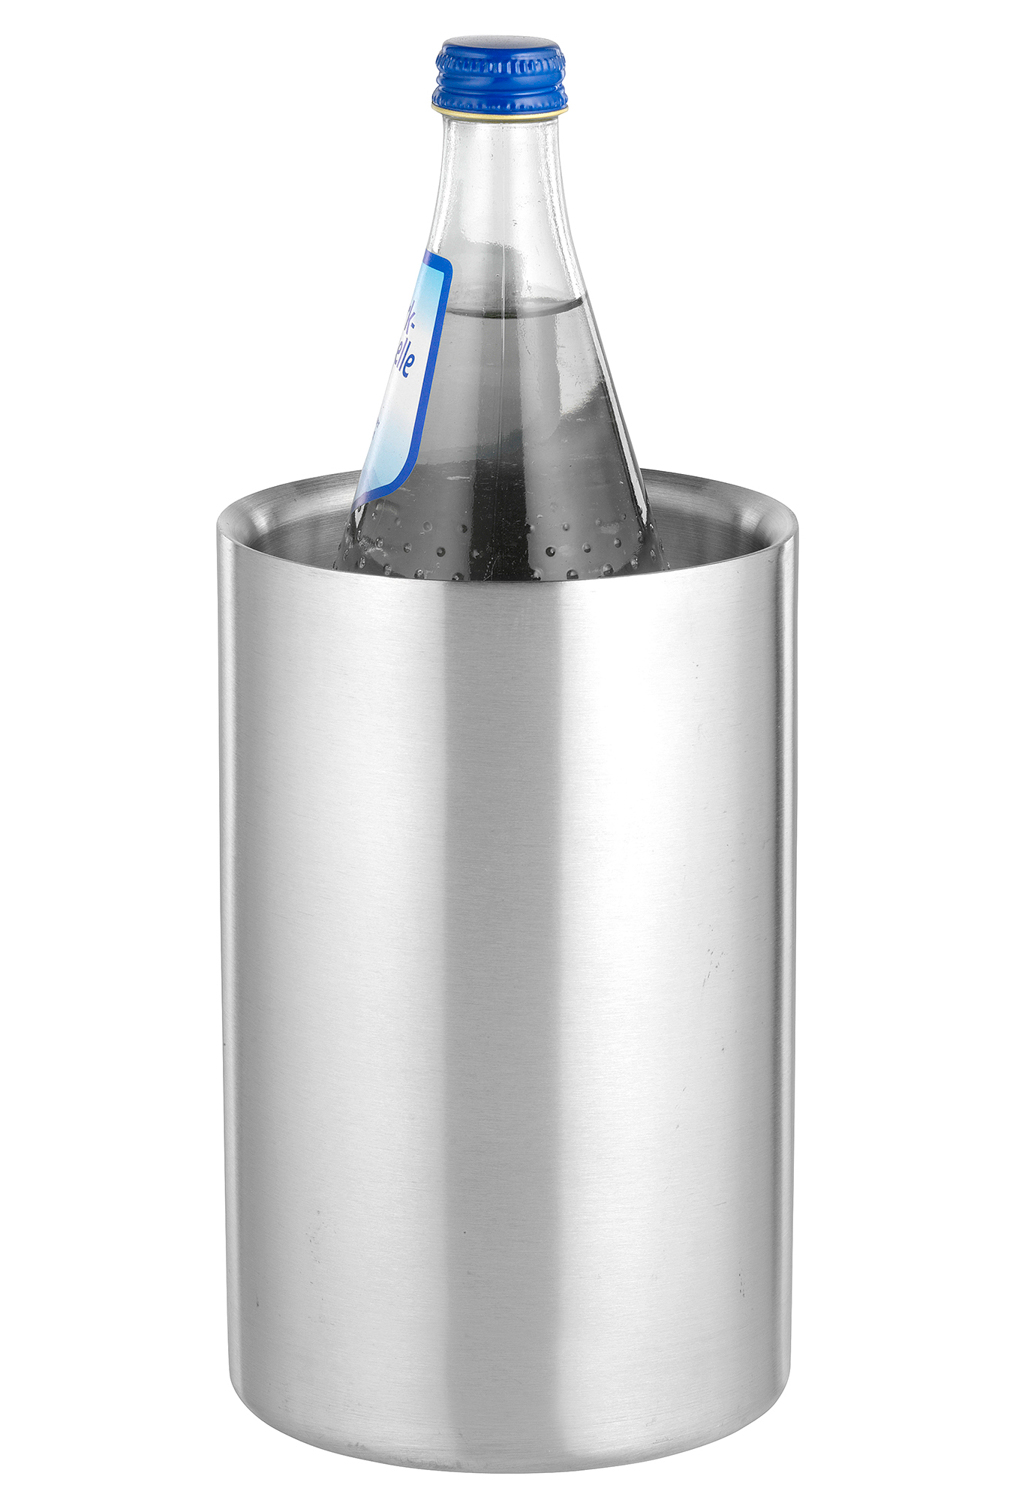 Flaschenkühler MIAMI von caterado. Aus Edelstahl 18/10, gebürstet. Doppelwandig. Höhe: 19,5 cm, Durchmesser: 12 cm.